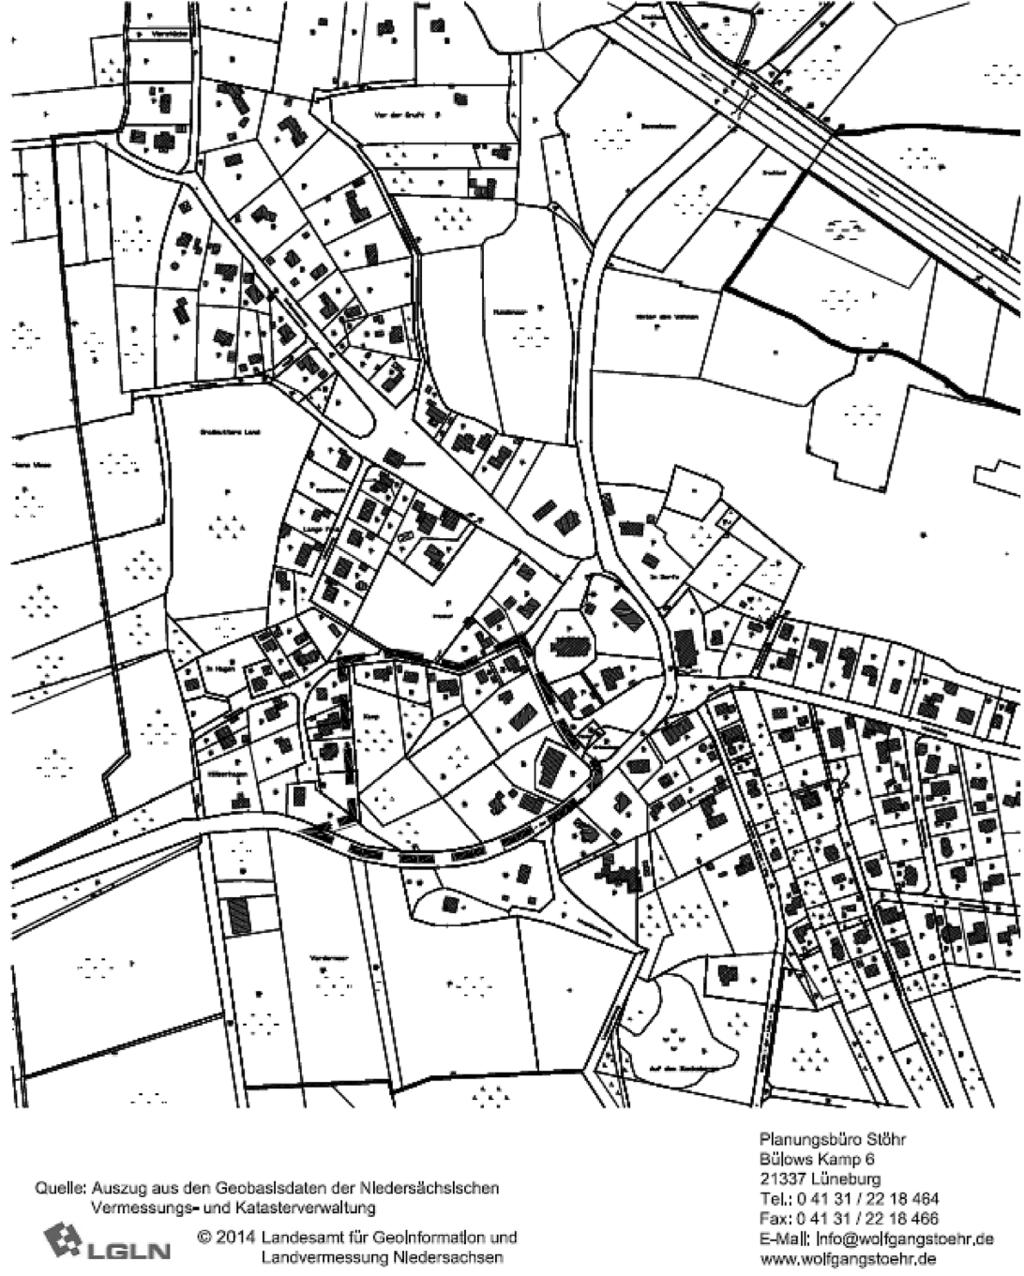 Allgemeines Am.0.0 hat der Rat der Gemeinde Barum die Aufstellung des Bebauungsplans St. Dionys Nr. Frankenweg Süd mit örtlicher Bauvorschrift beschlossen.